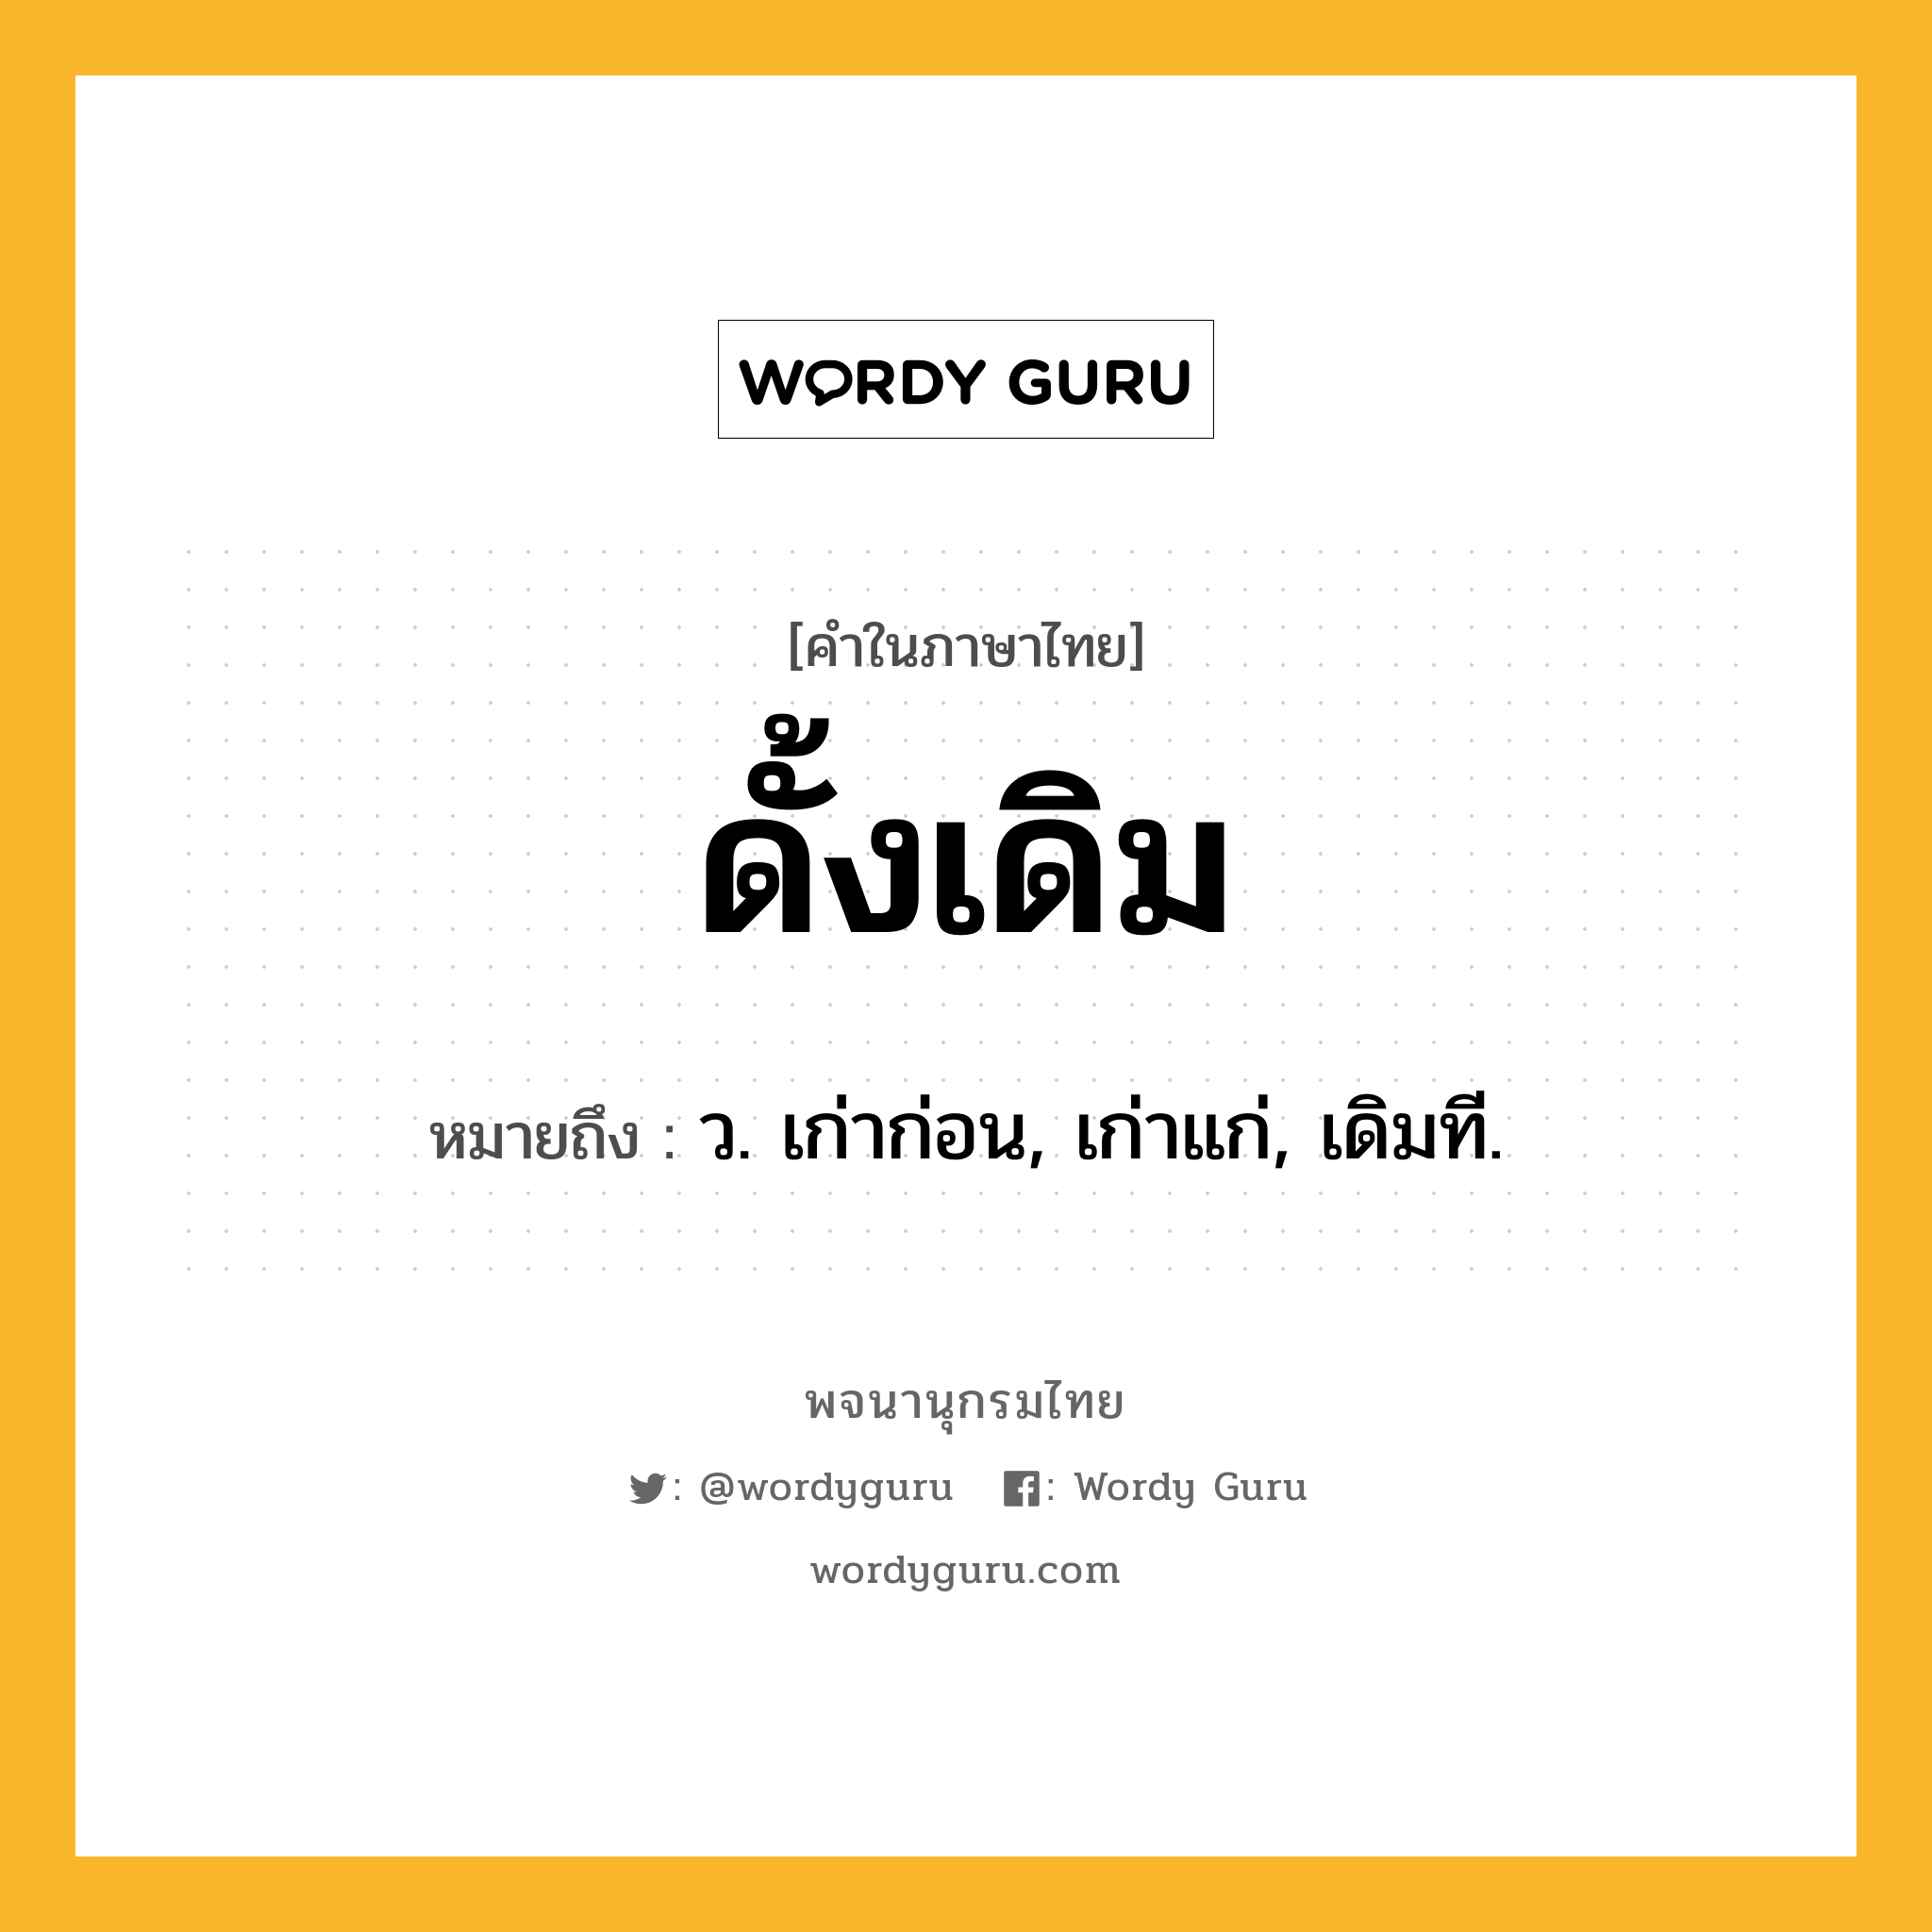 ดั้งเดิม ความหมาย หมายถึงอะไร?, คำในภาษาไทย ดั้งเดิม หมายถึง ว. เก่าก่อน, เก่าแก่, เดิมที.